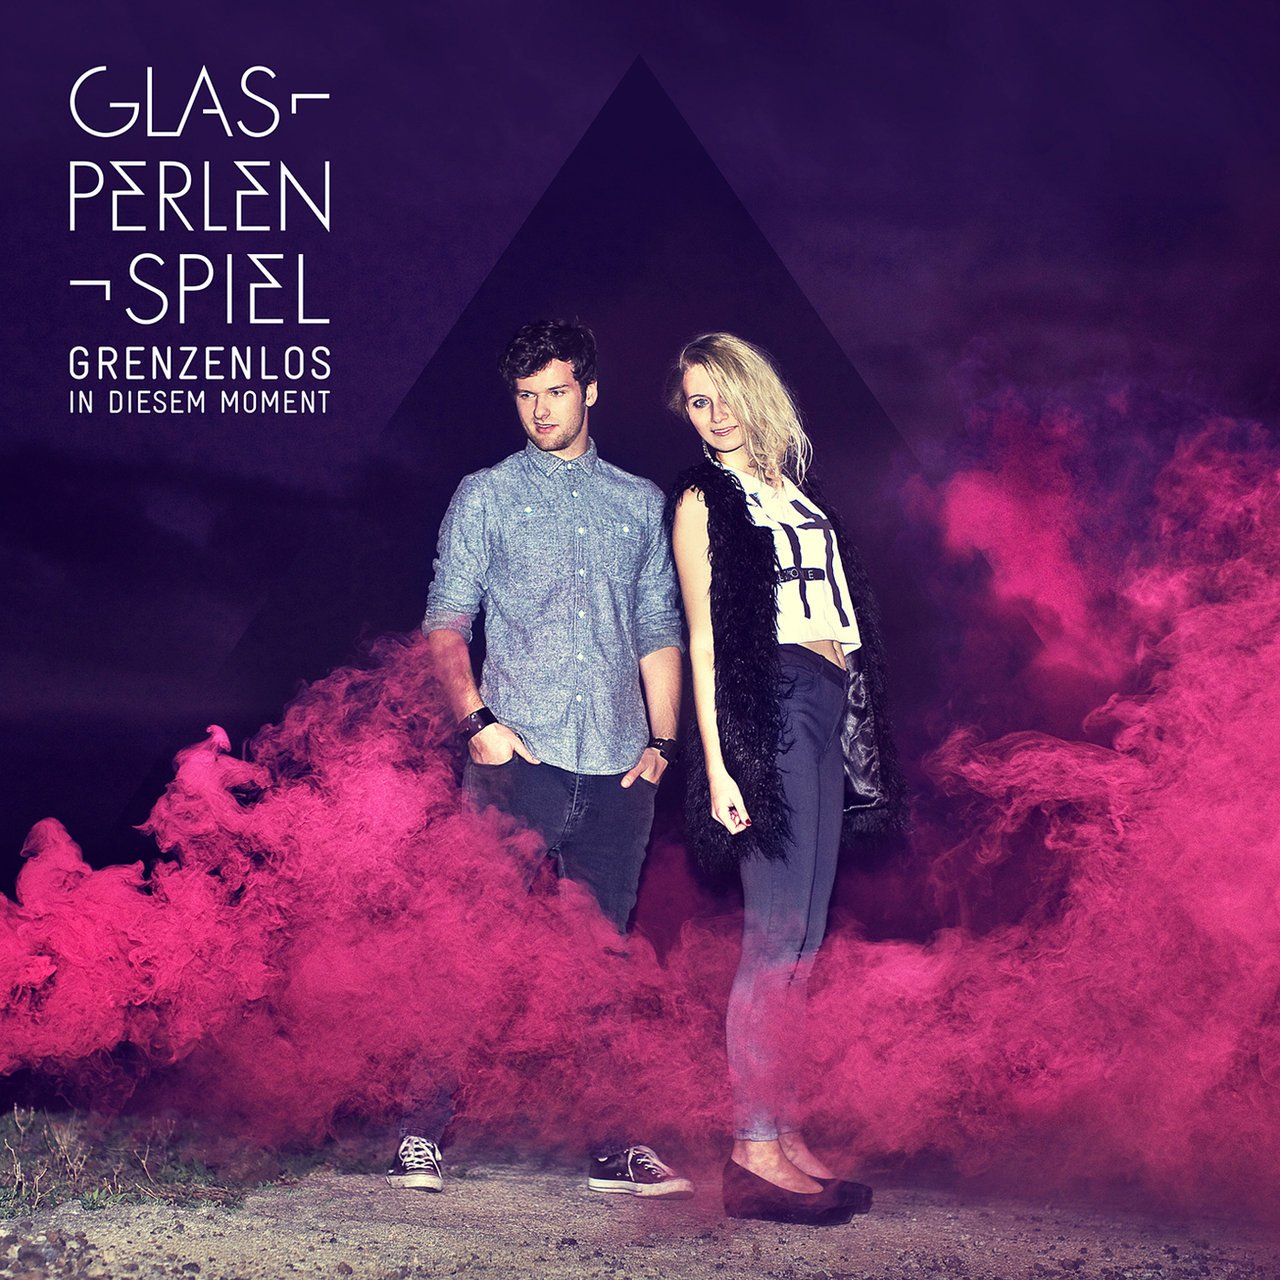 Glasperlenspiel — Moment cover artwork